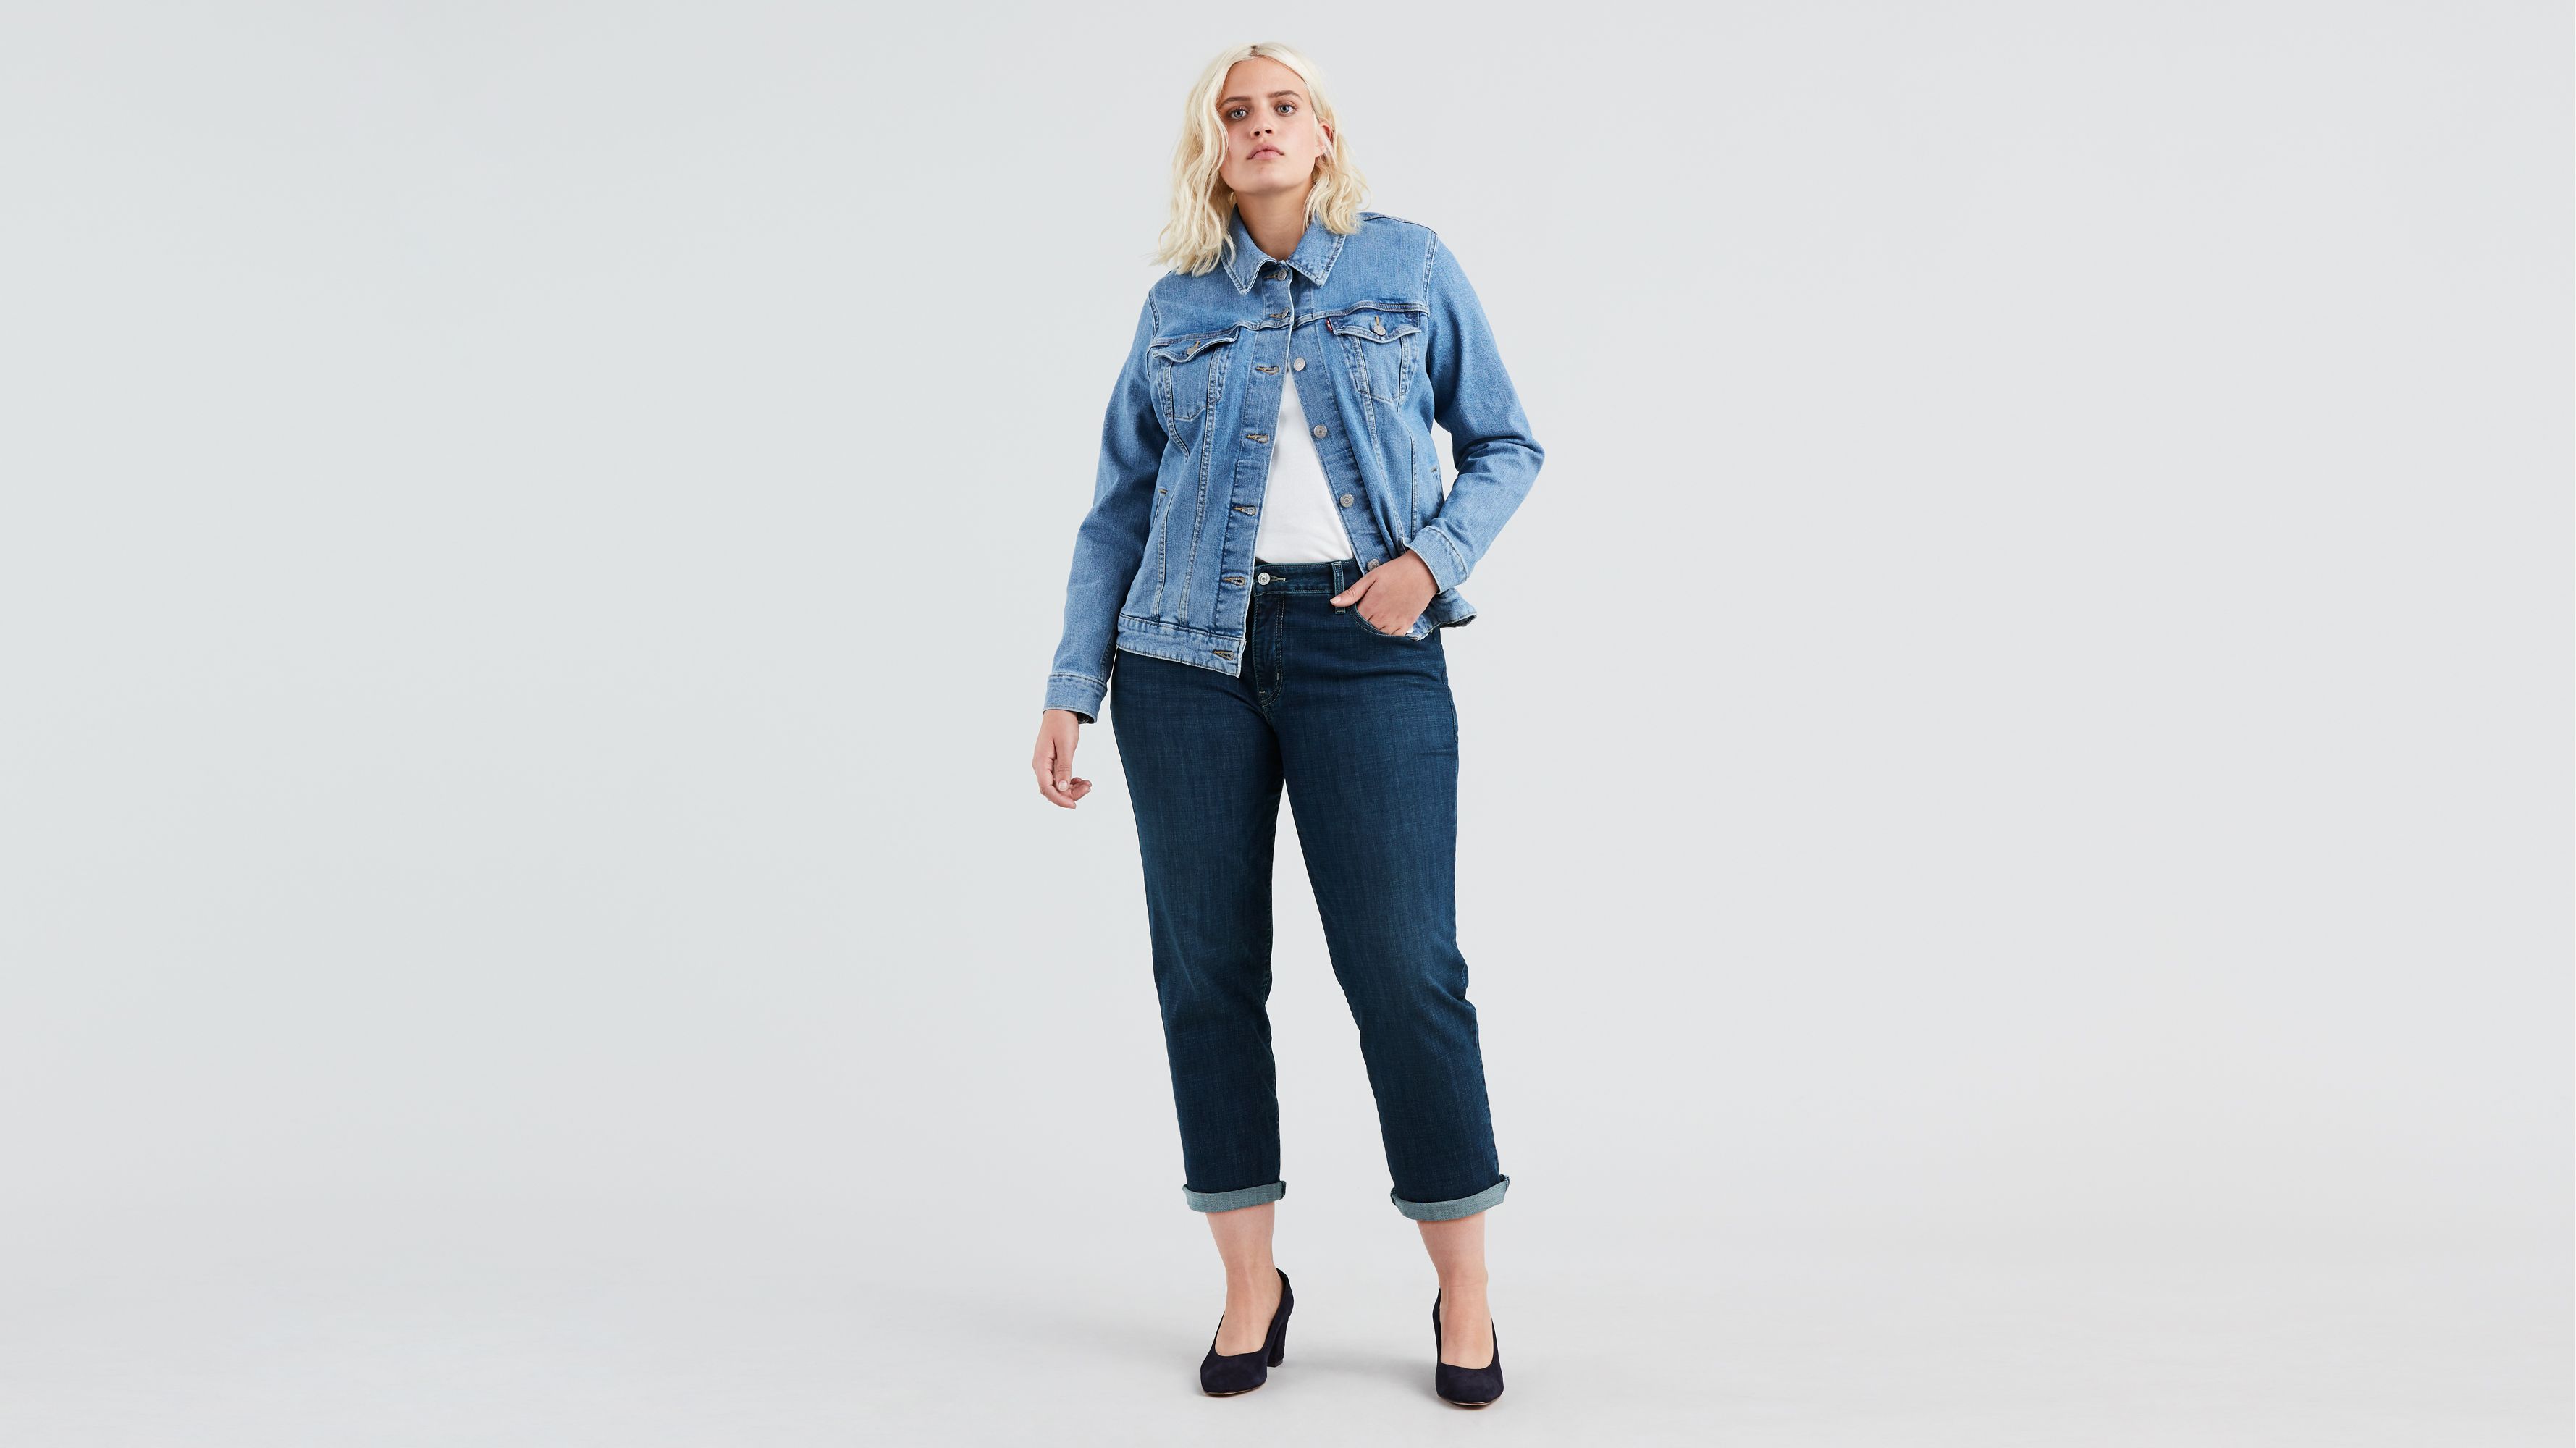 Boyfriend Women's Jeans (plus Size) - Medium Wash | Levi's® US